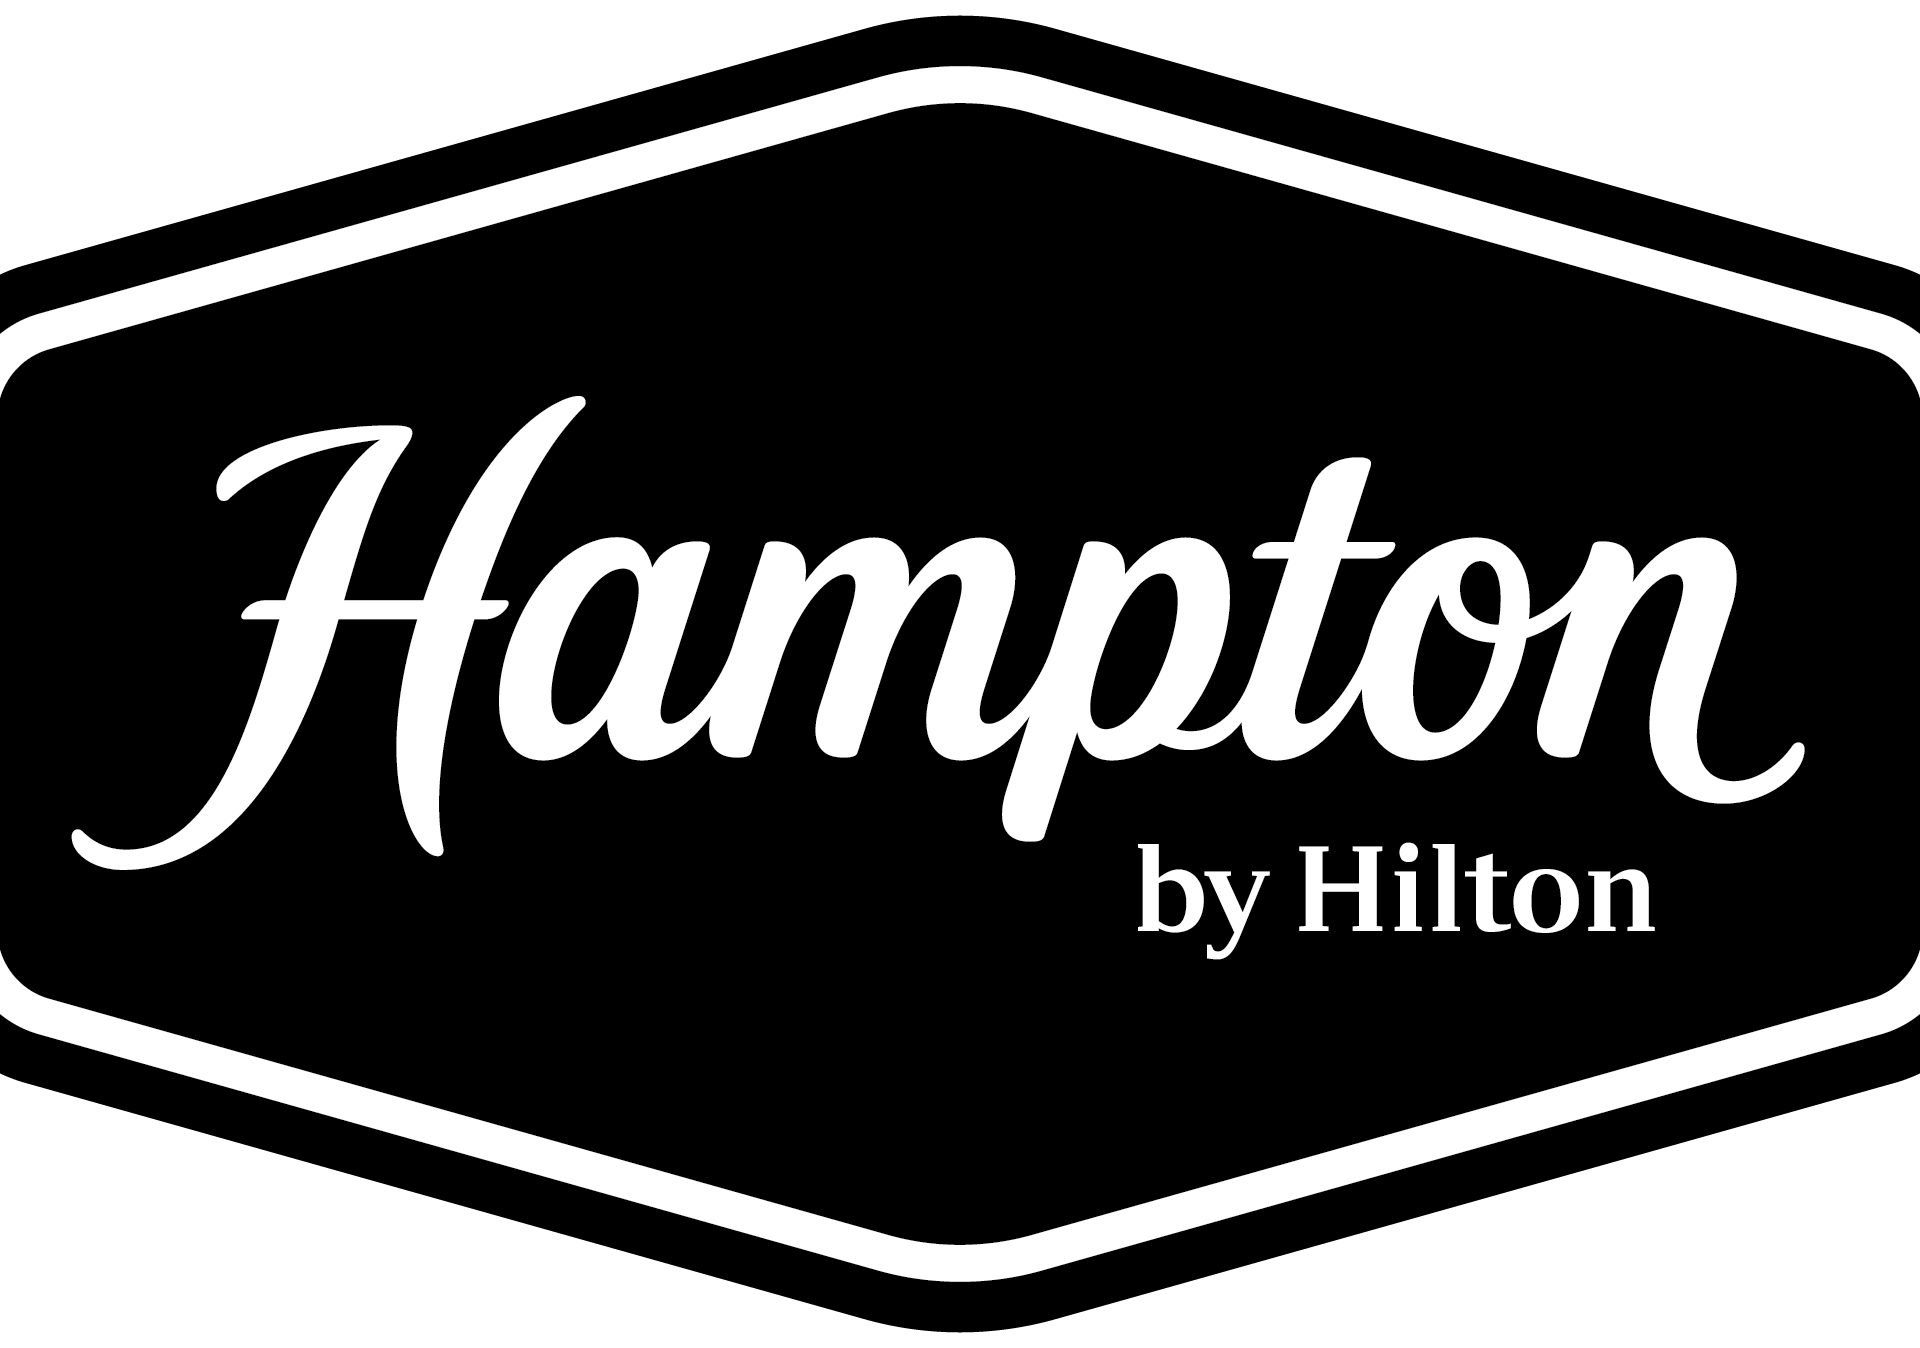 Hampton by Hilton - Logo - Black